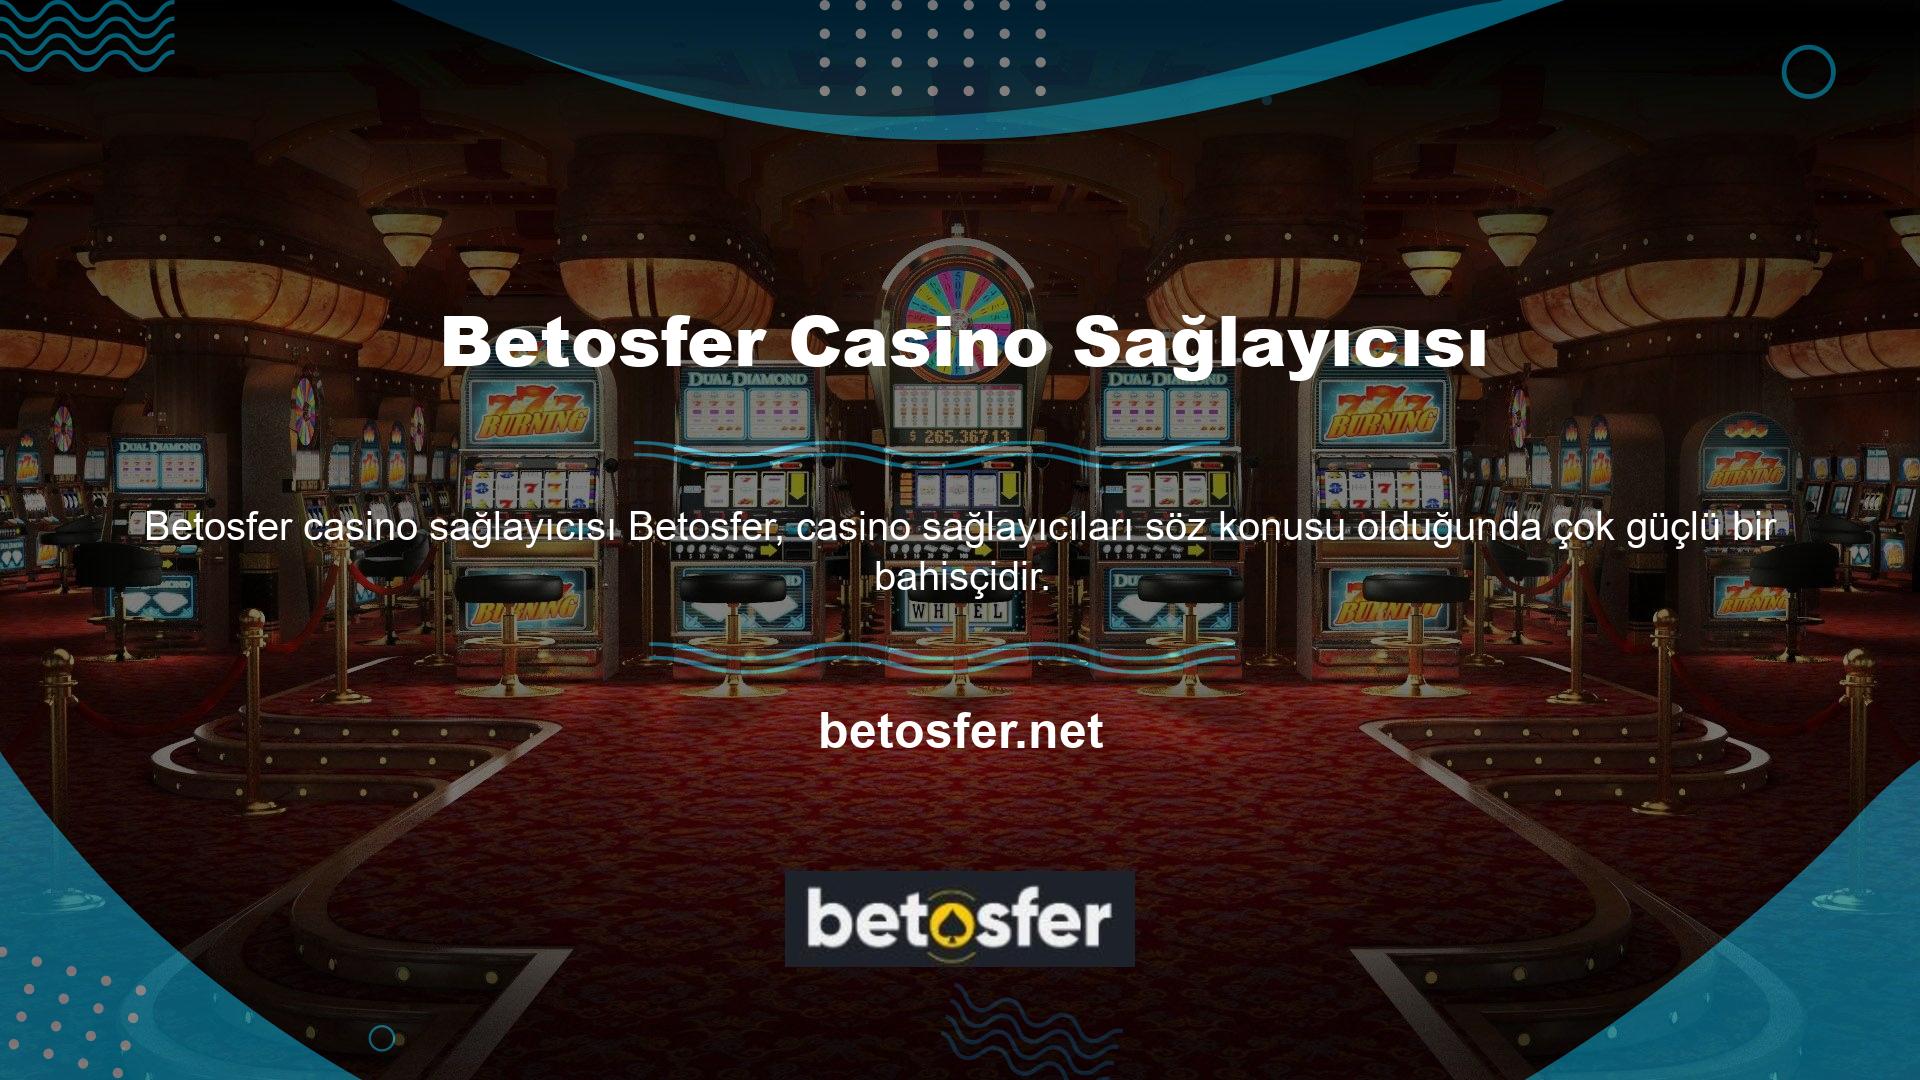 Aslında, birçok oyuncu casino sağlayıcılarının önemini tam olarak anlamıyor